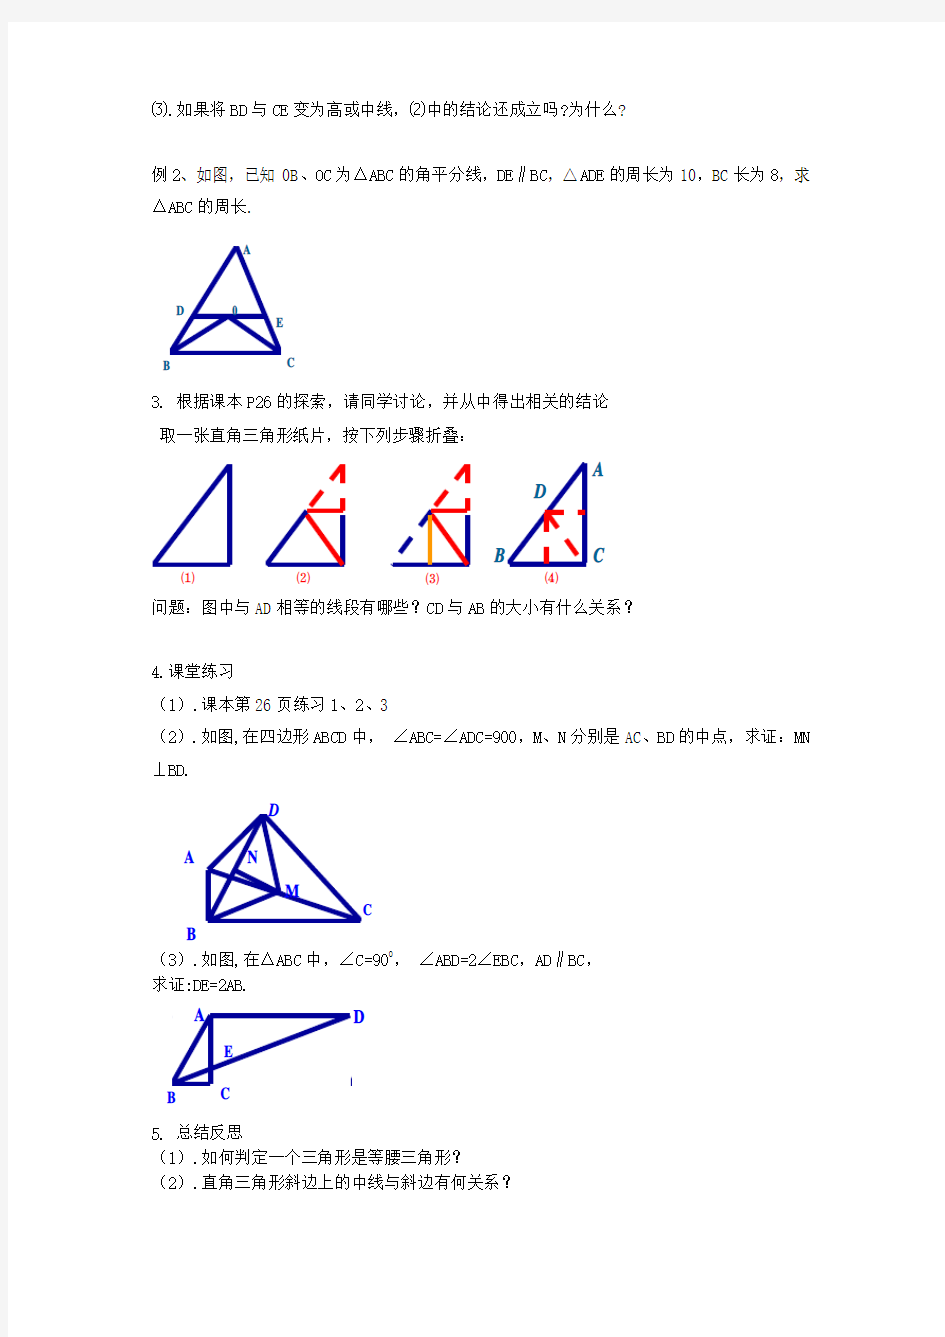 1.5等腰三角形的轴对称性(2)教学案